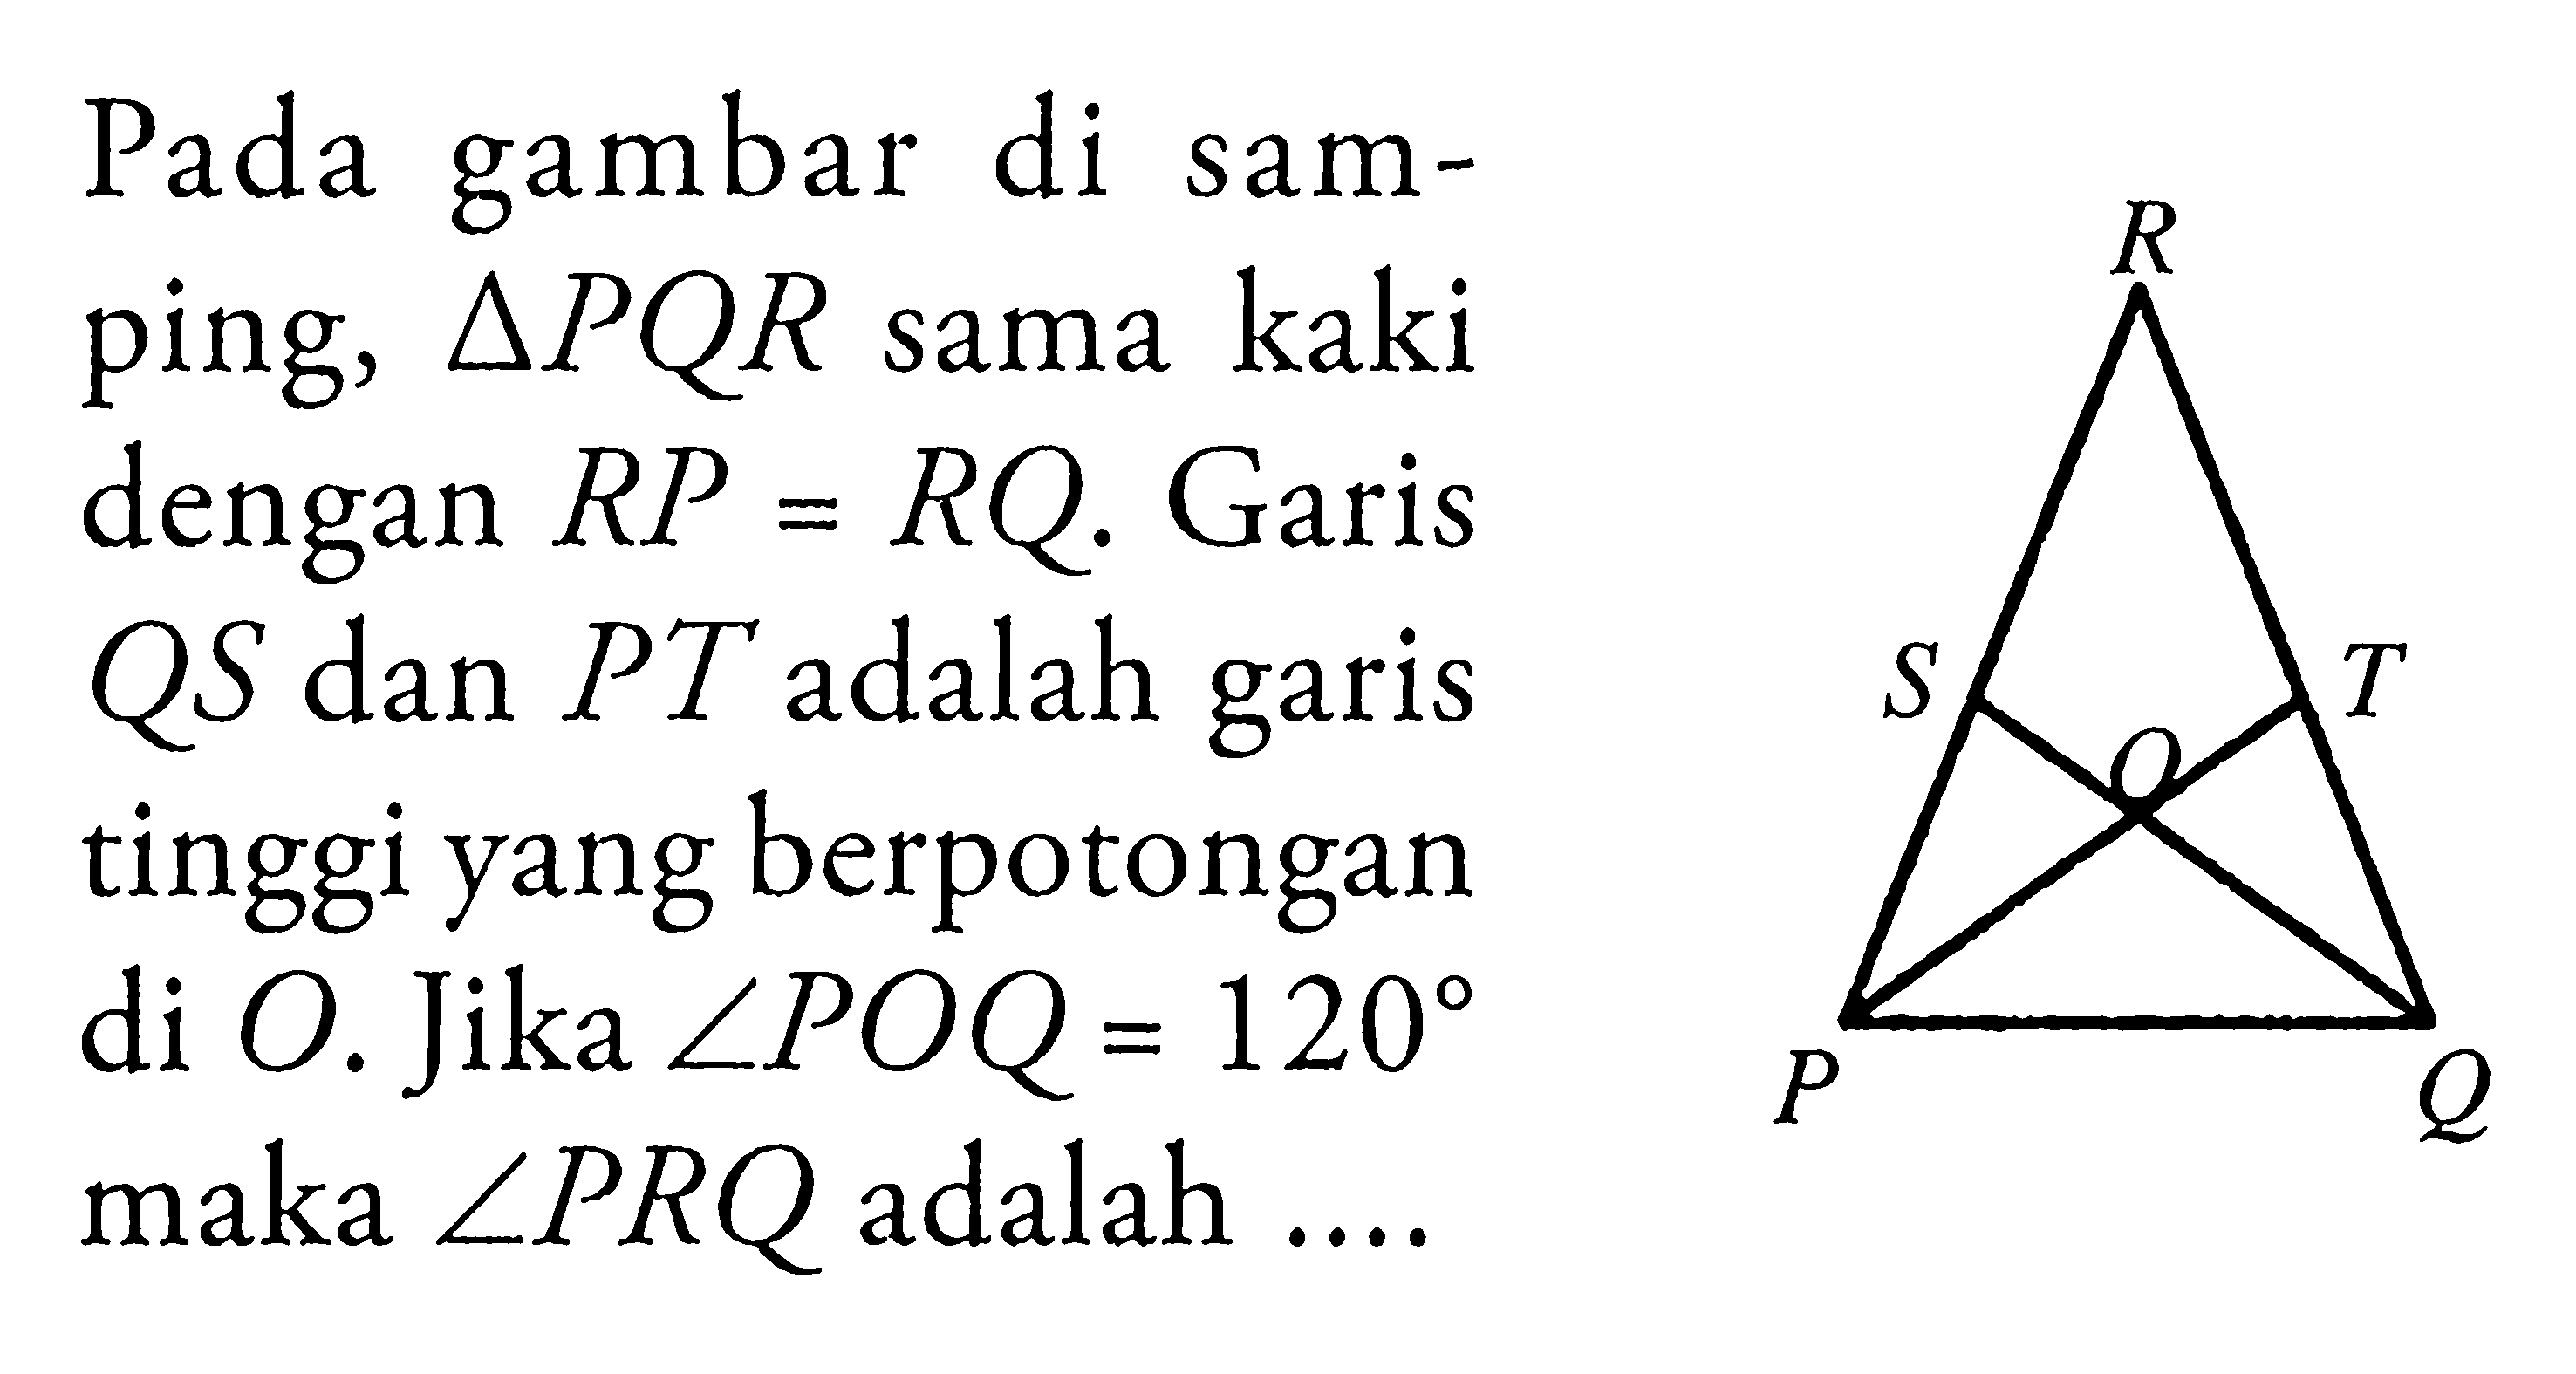 Pada gambar di samping, segitiga PQR sama kaki dengan RP=RQ. Garis QS dan PT adalah garis tinggi yang berpotongan di O. Jika sudut POQ=120 maka sudut PRQ adalah  ....